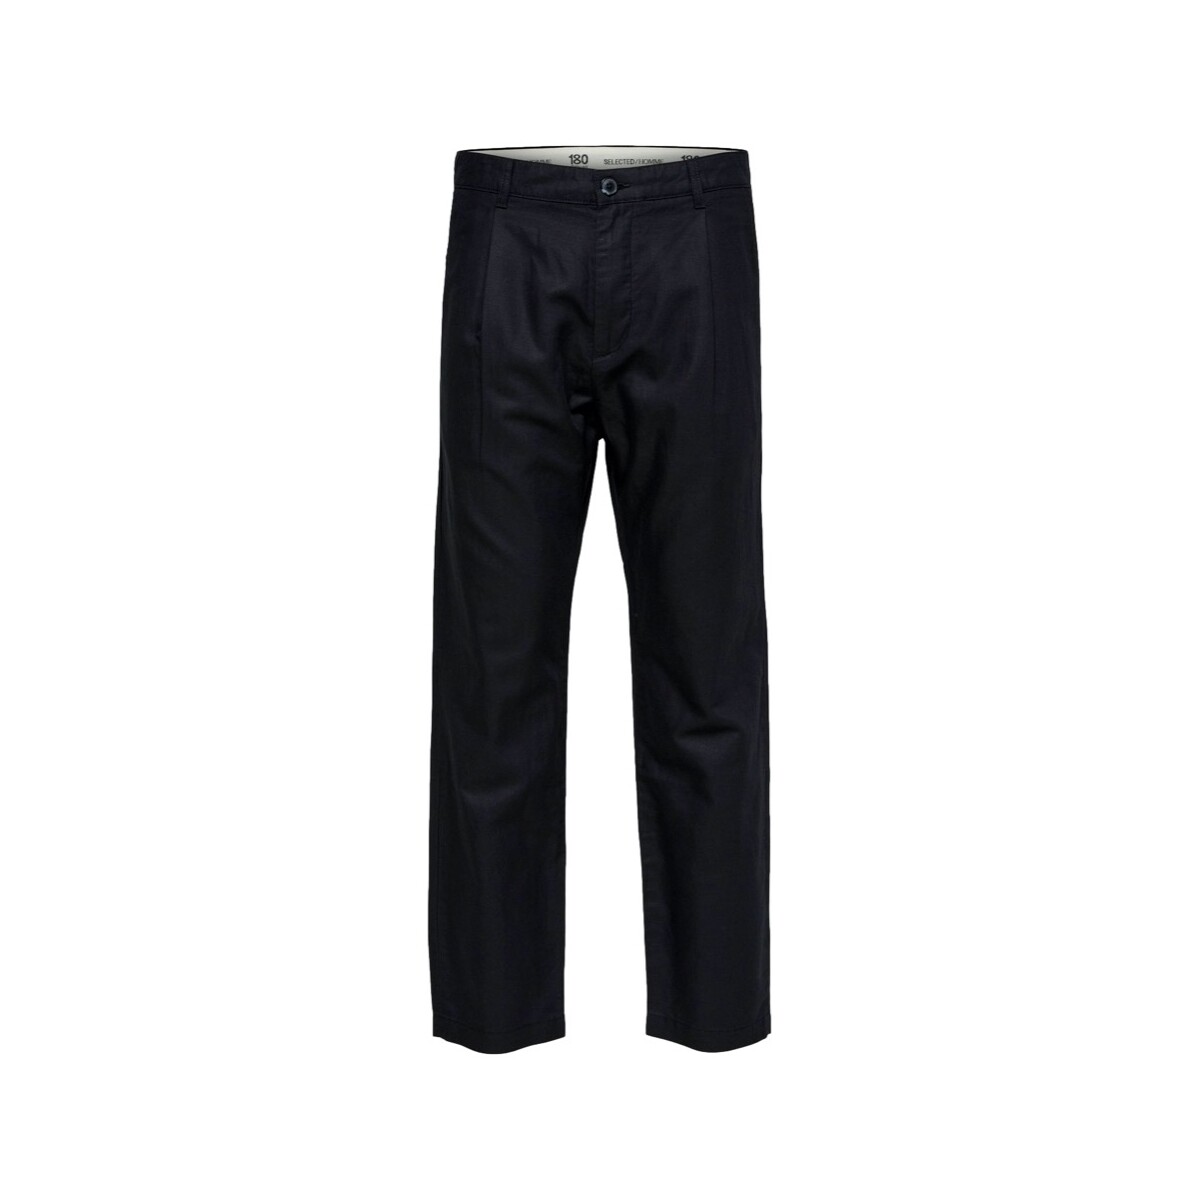 Textiel Heren Broeken / Pantalons Selected Relaxed Jones Linen - Black Zwart